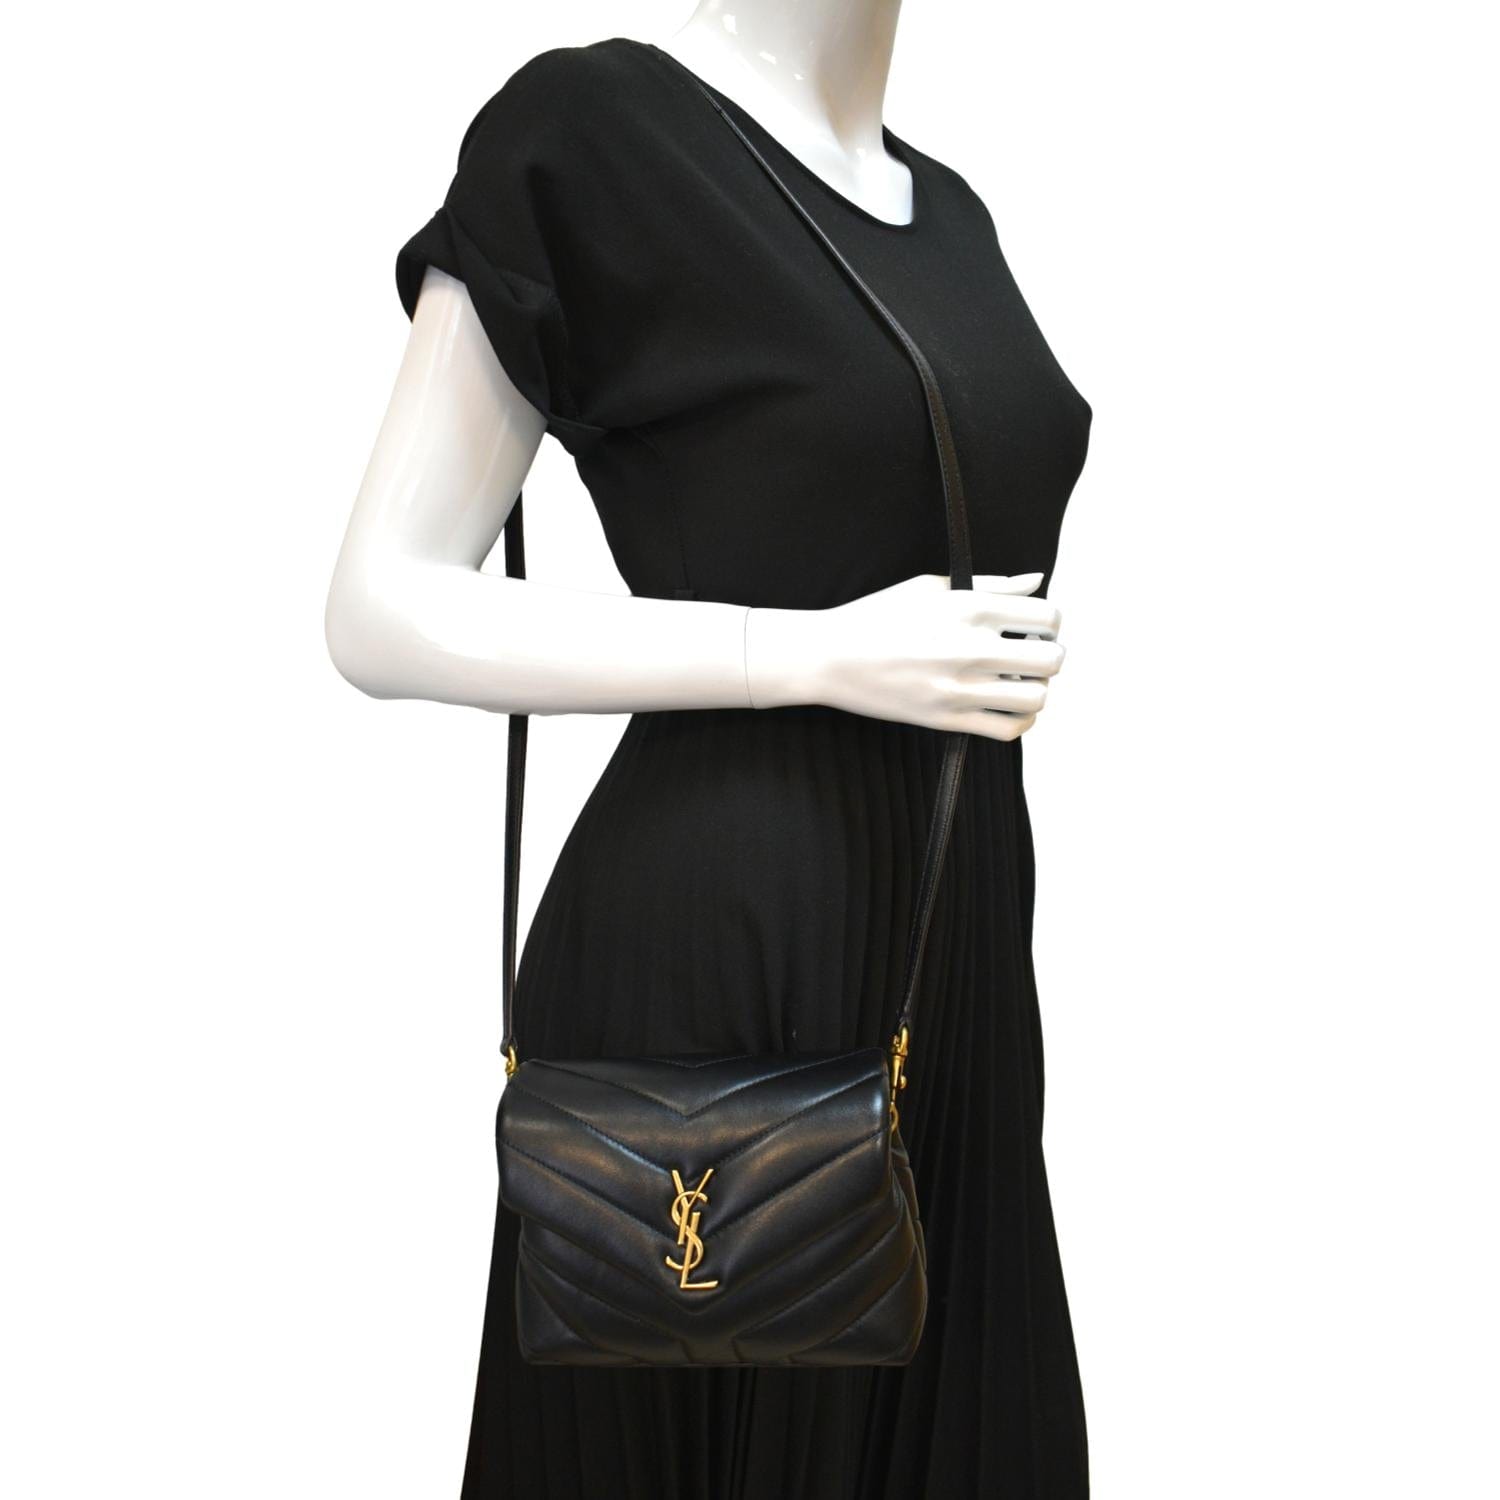 Saint Laurent - Authenticated Loulou Handbag - Leather Black Plain for Women, Never Worn